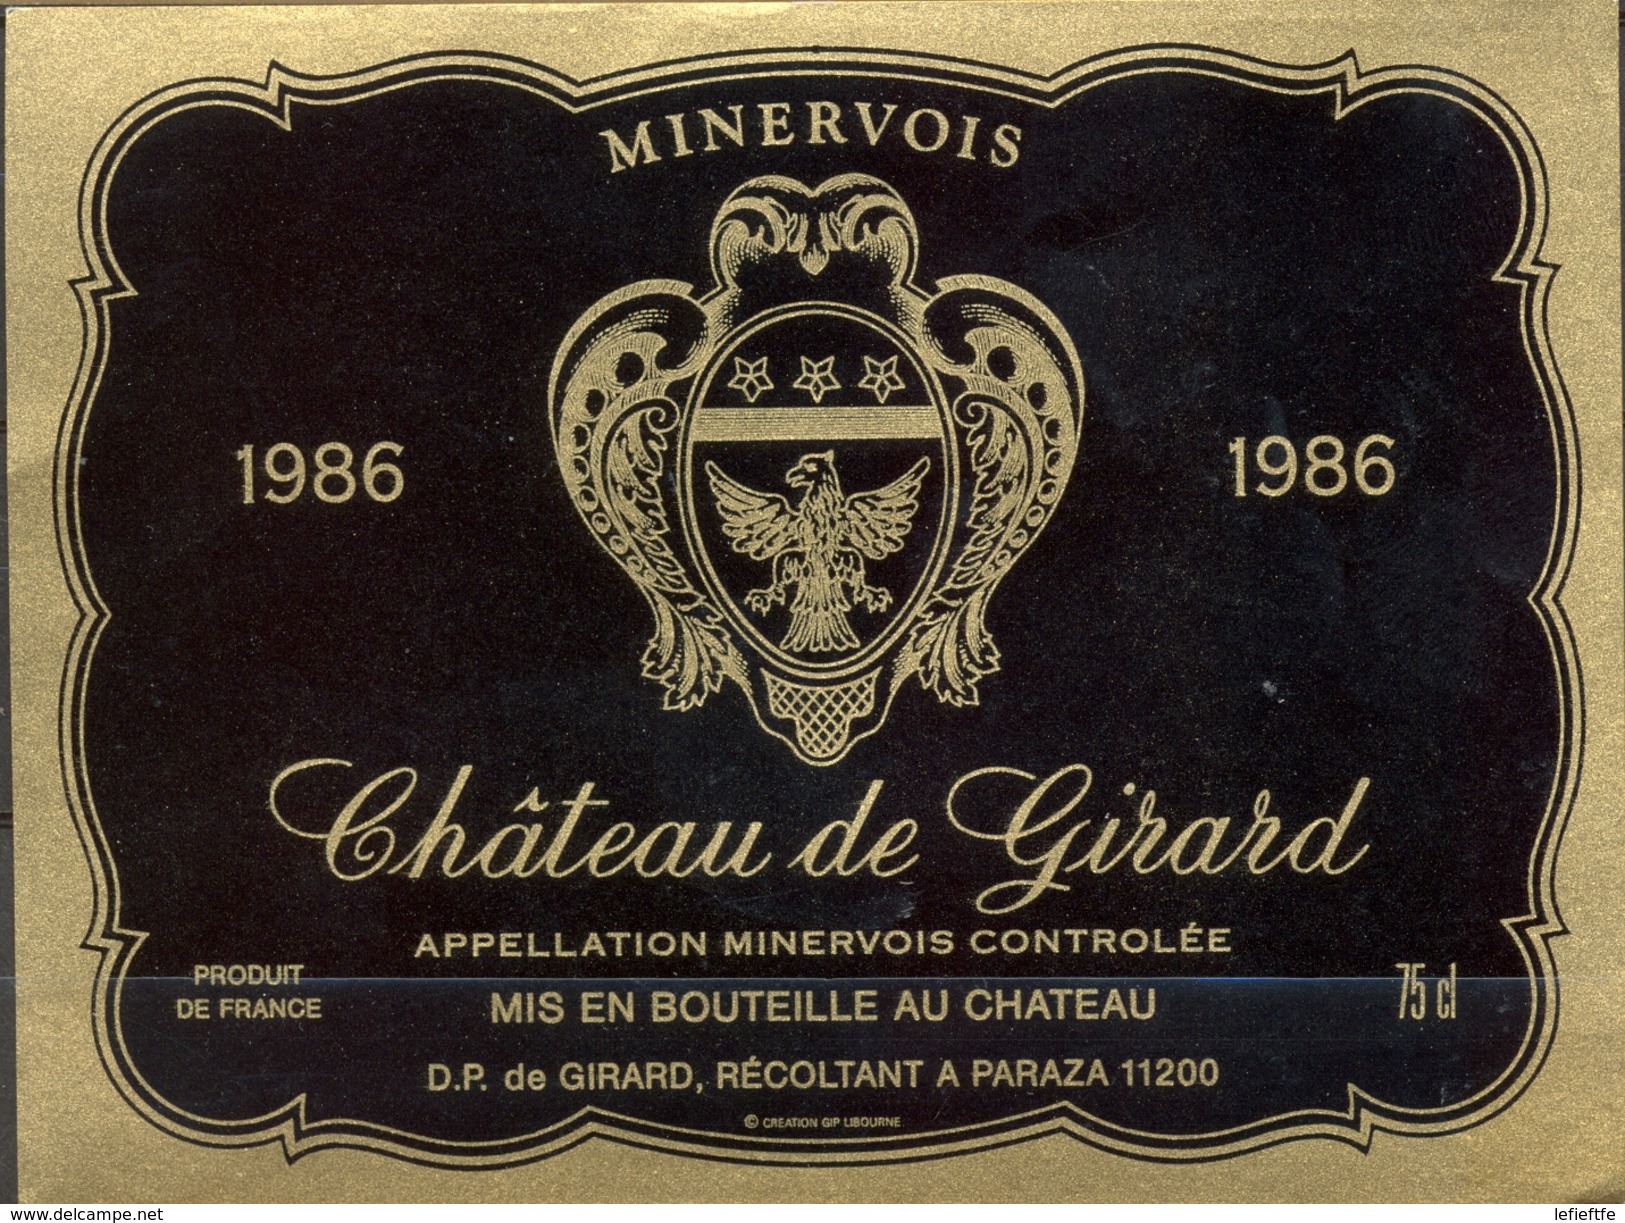 491 - France - 1986 - Minervois - Château De Girard - D.P. De Girard Récoltant à Paraza 11200 - Rouges